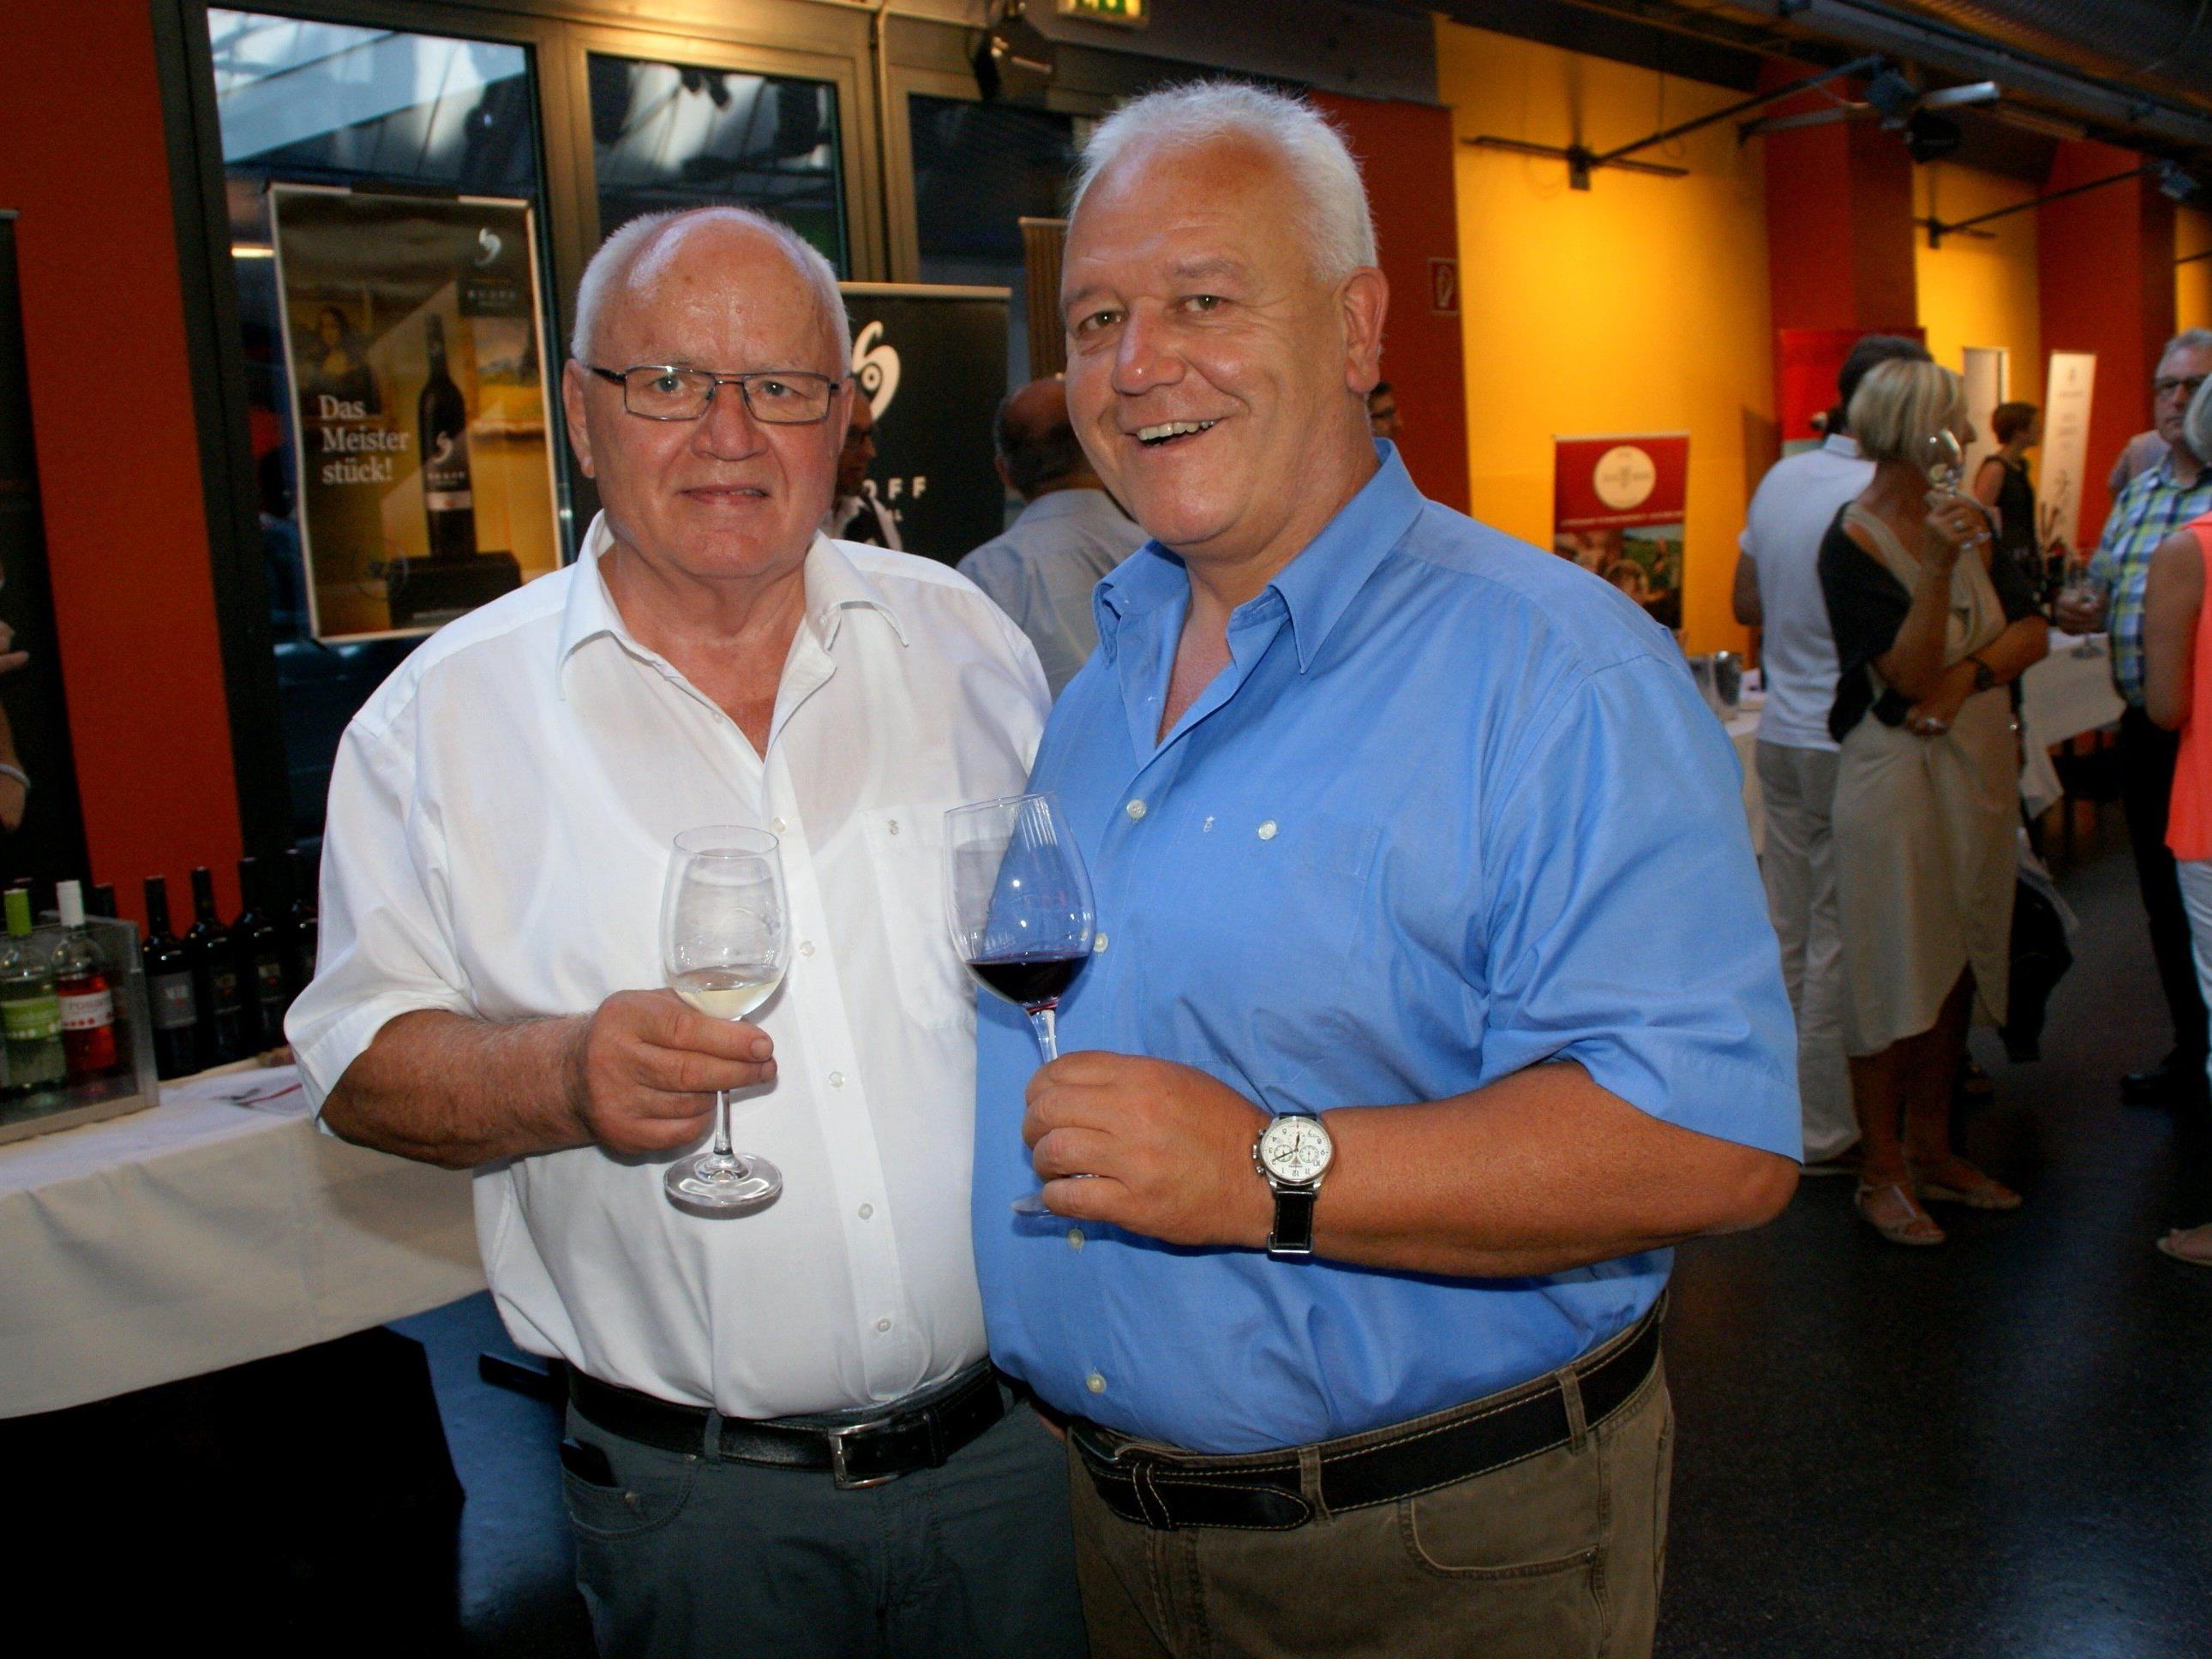 v.li. Gerhard Steurer und Hannes Amann hatten zur Weinvision geladen!